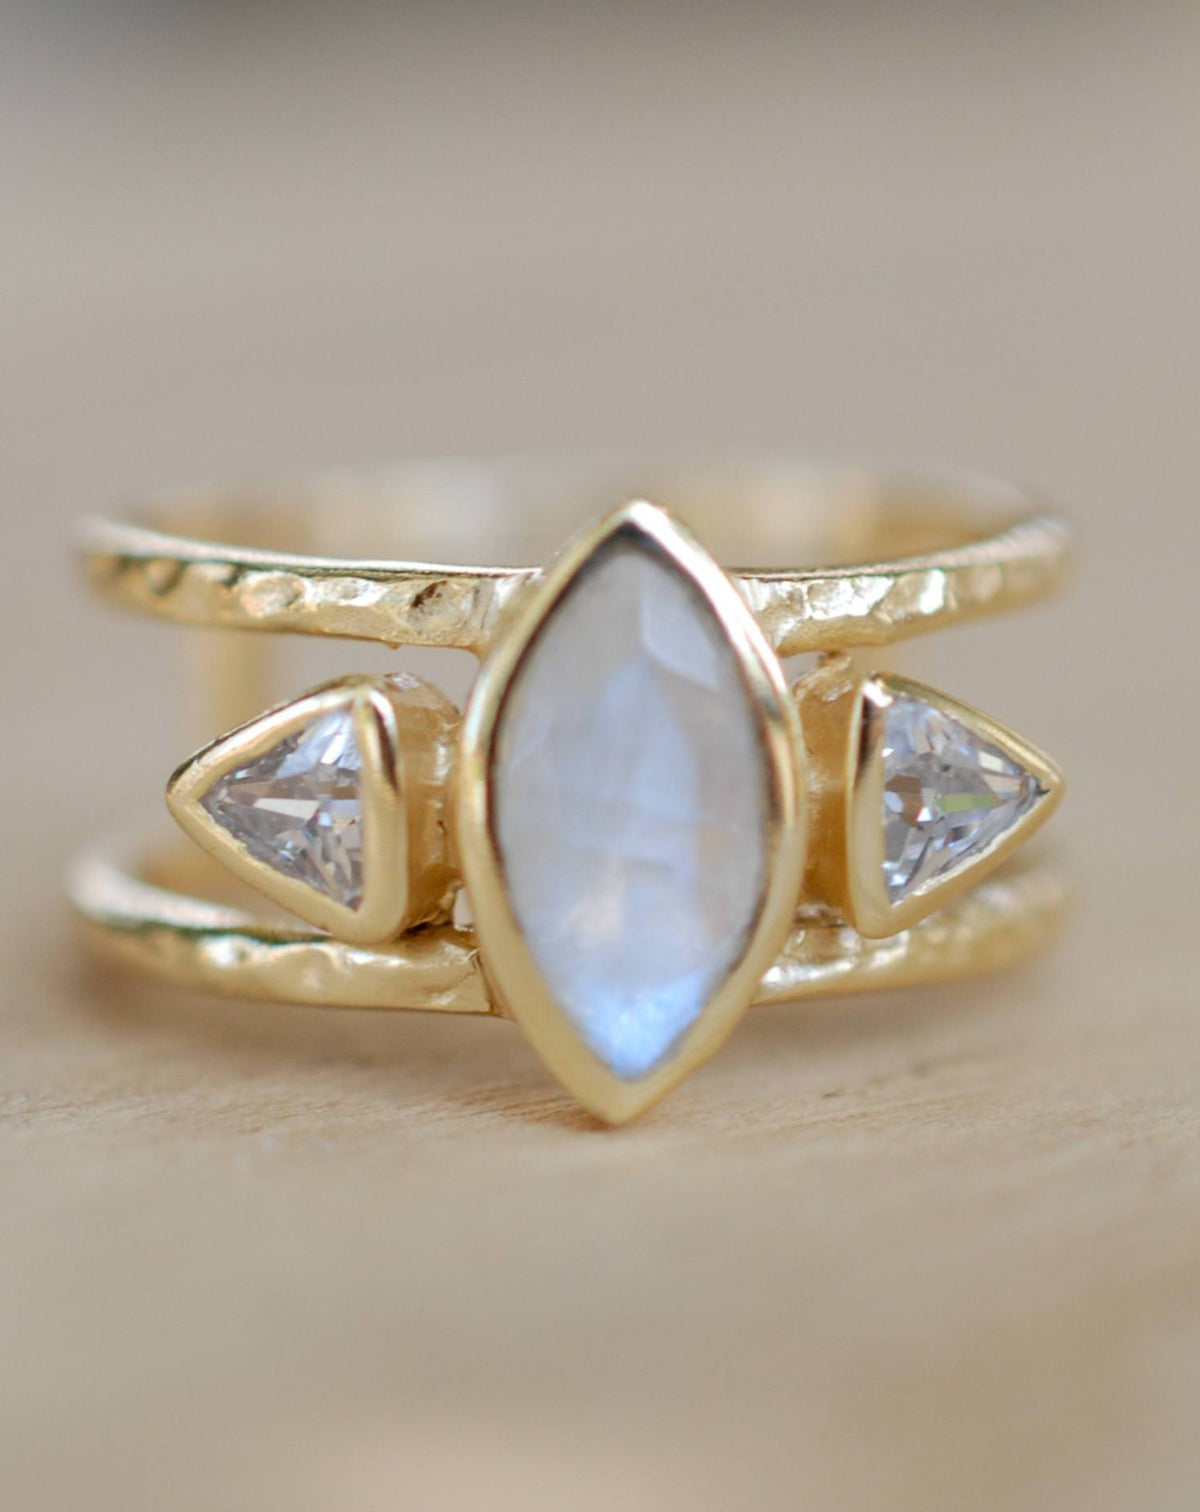 Moonstone & White Topaz Ring * Gold Vermeil Ring * Statement Ring *Gemstone Ring * Labradorite * Bridal Ring *Wedding Ring  * BJR149